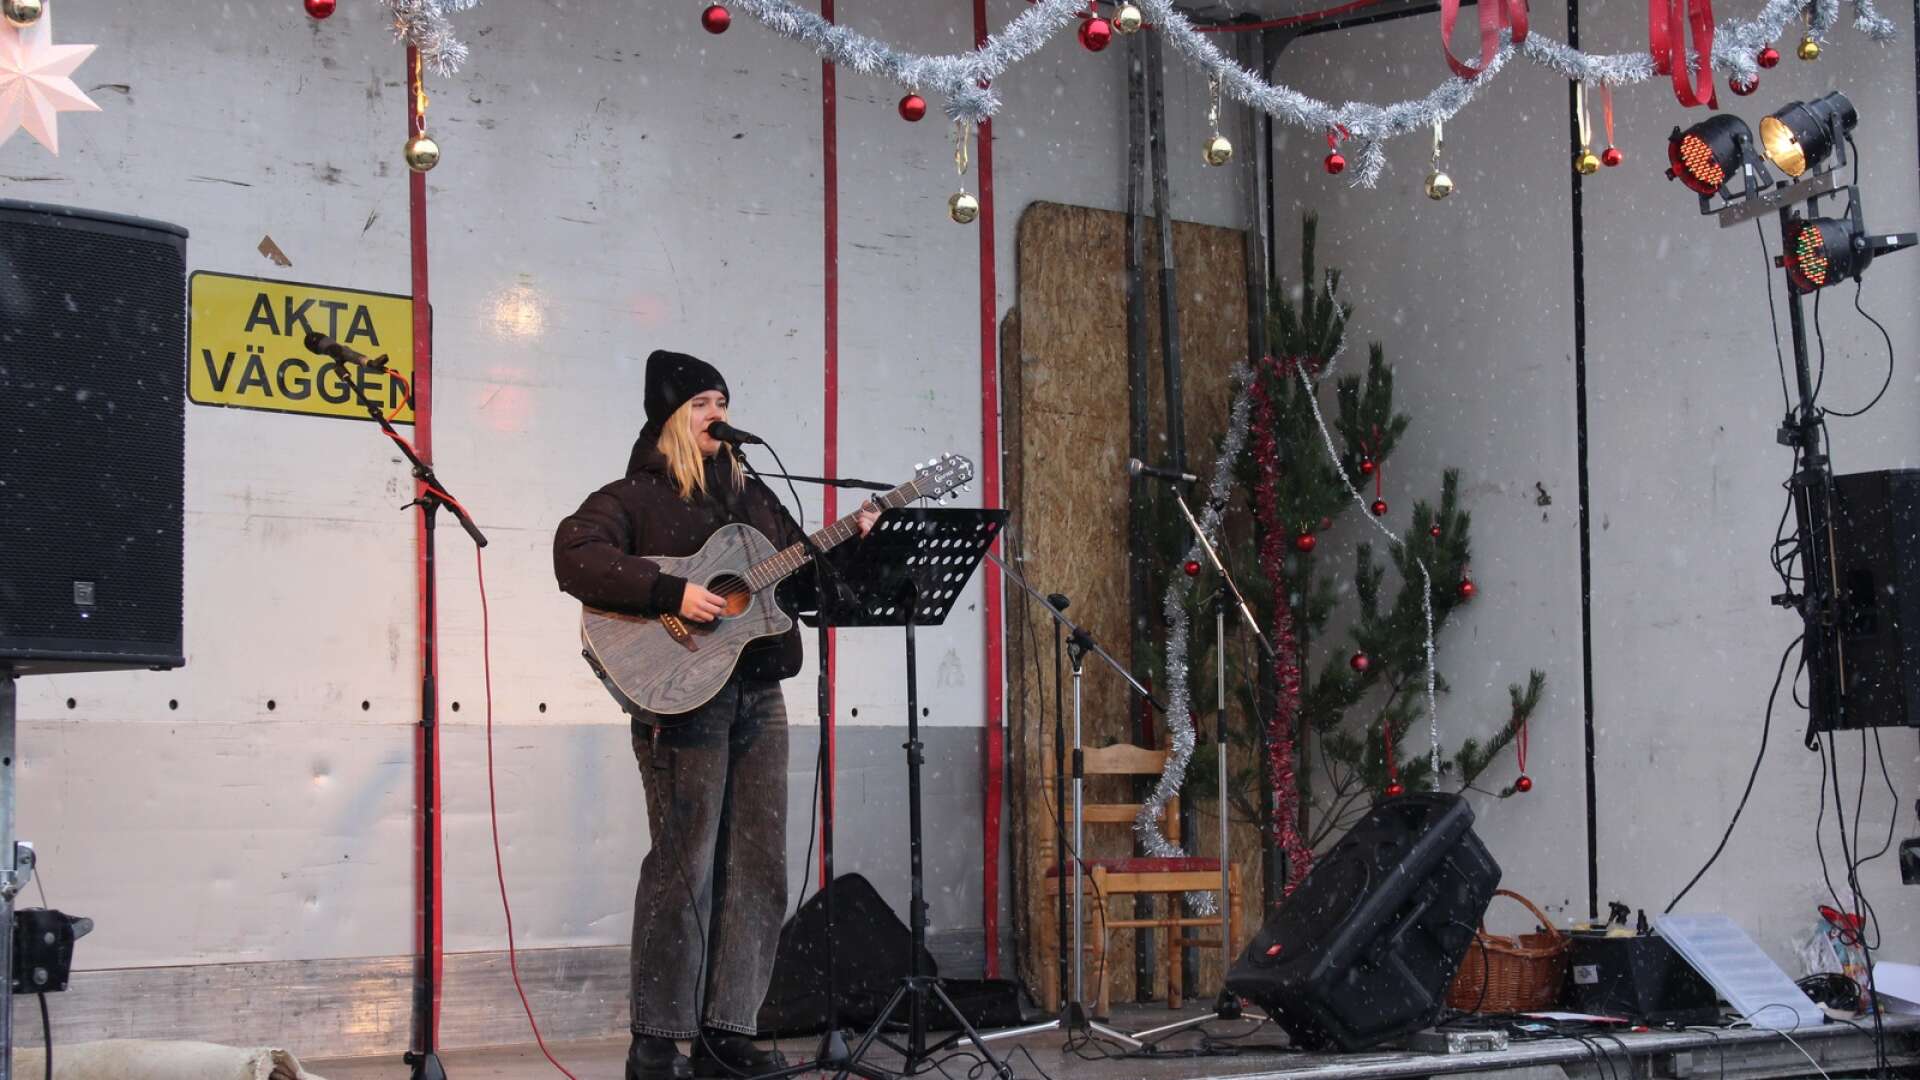 Idoldeltagaren Anja Karlsson från Jung uppträdde för marknadsbesökarna med flera låtar till eget gitarrackompanjemang.